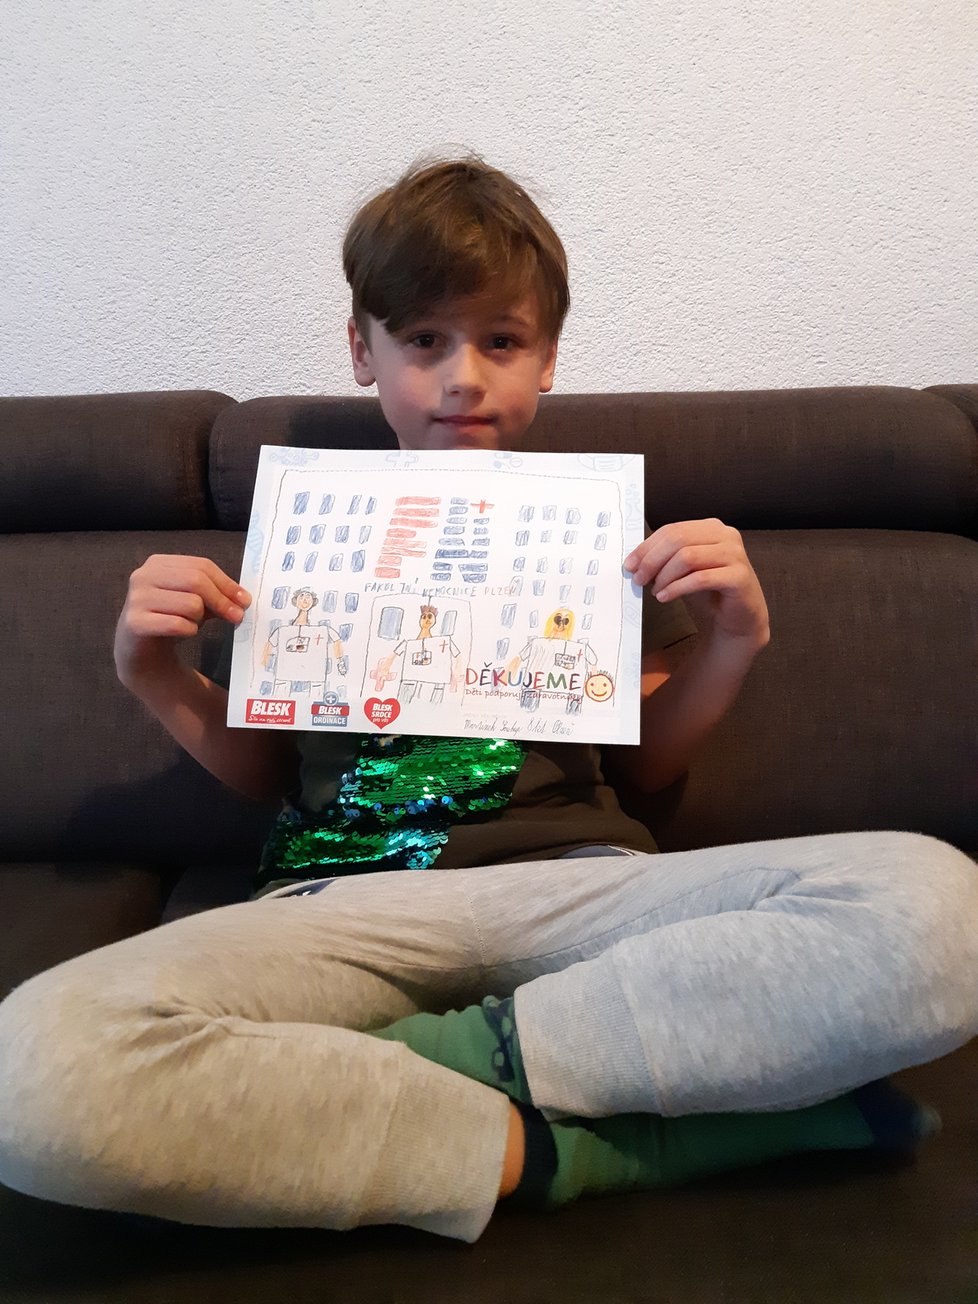 Martínek, 8 let, Plzeň: Děkujeme, že nás léčíte, když jsme nemocní.